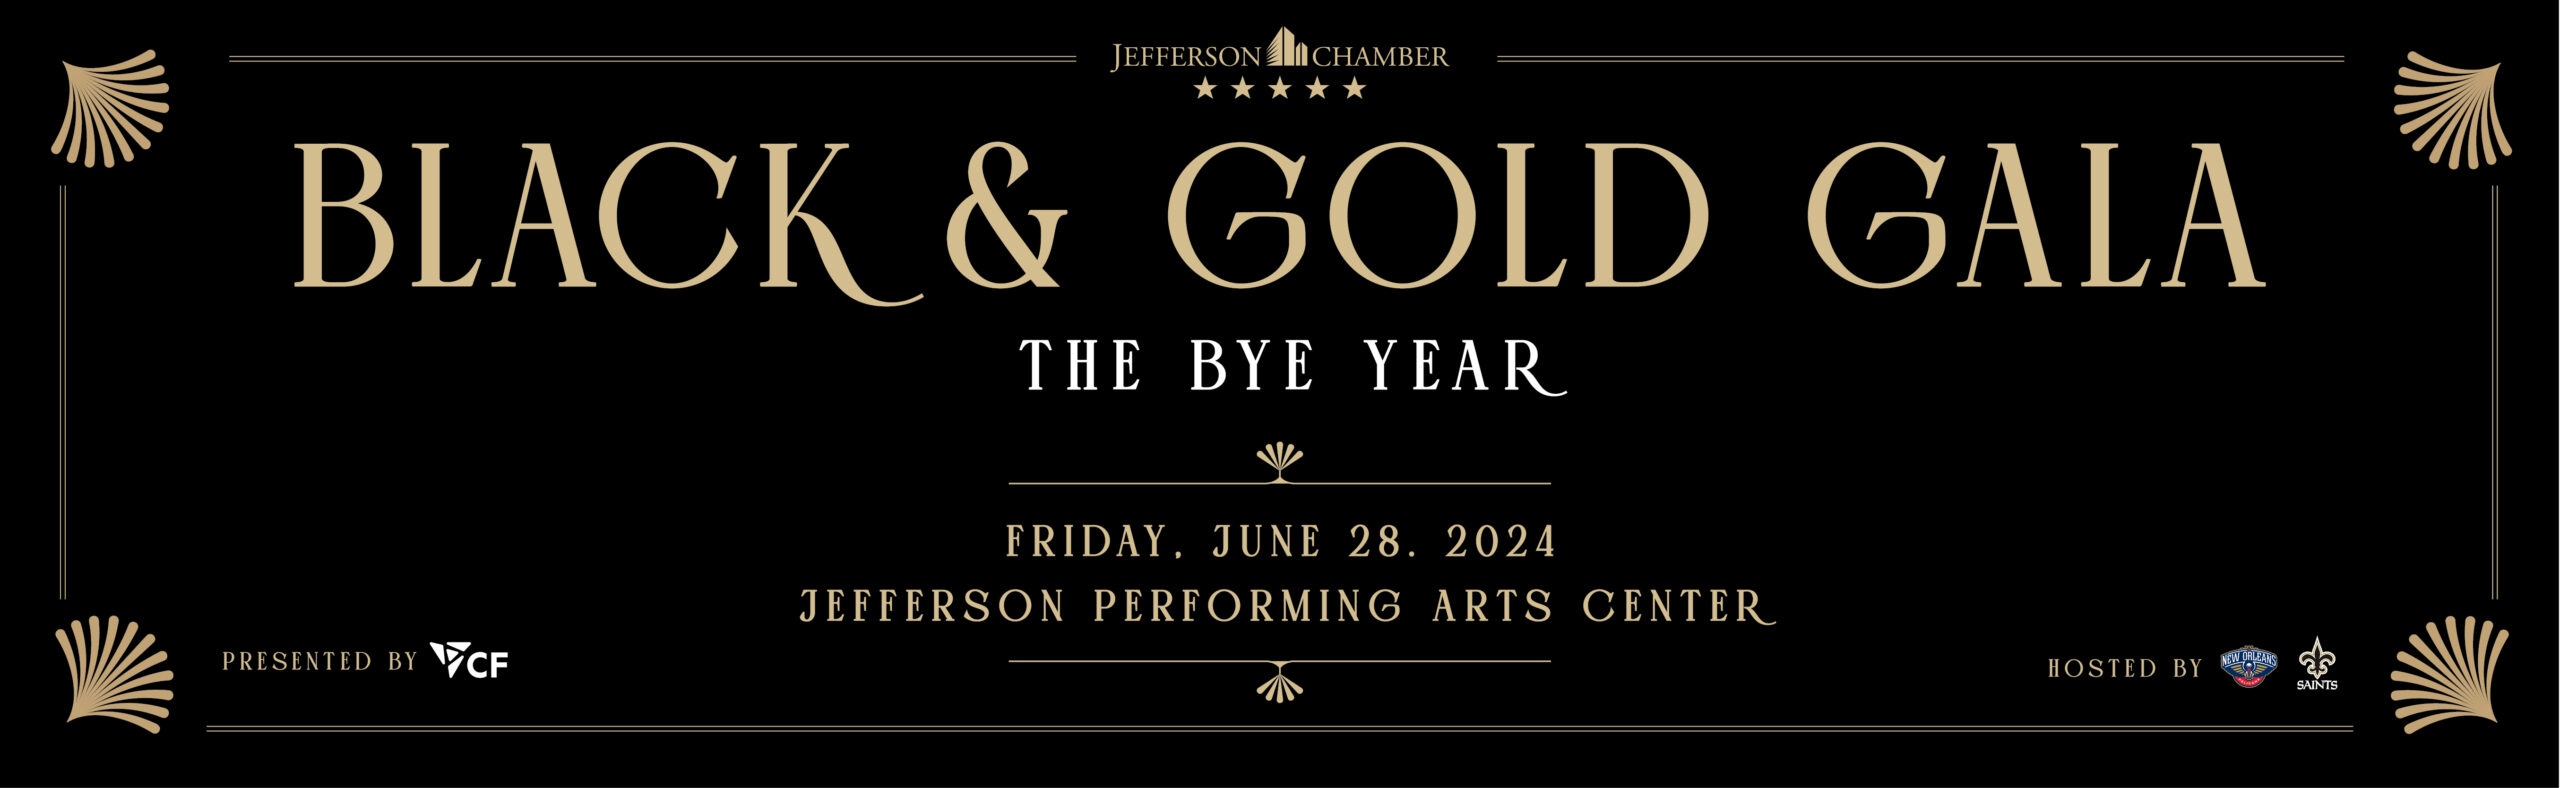 Gala 2024. Black and Gold Gala. Jefferson Chamber.